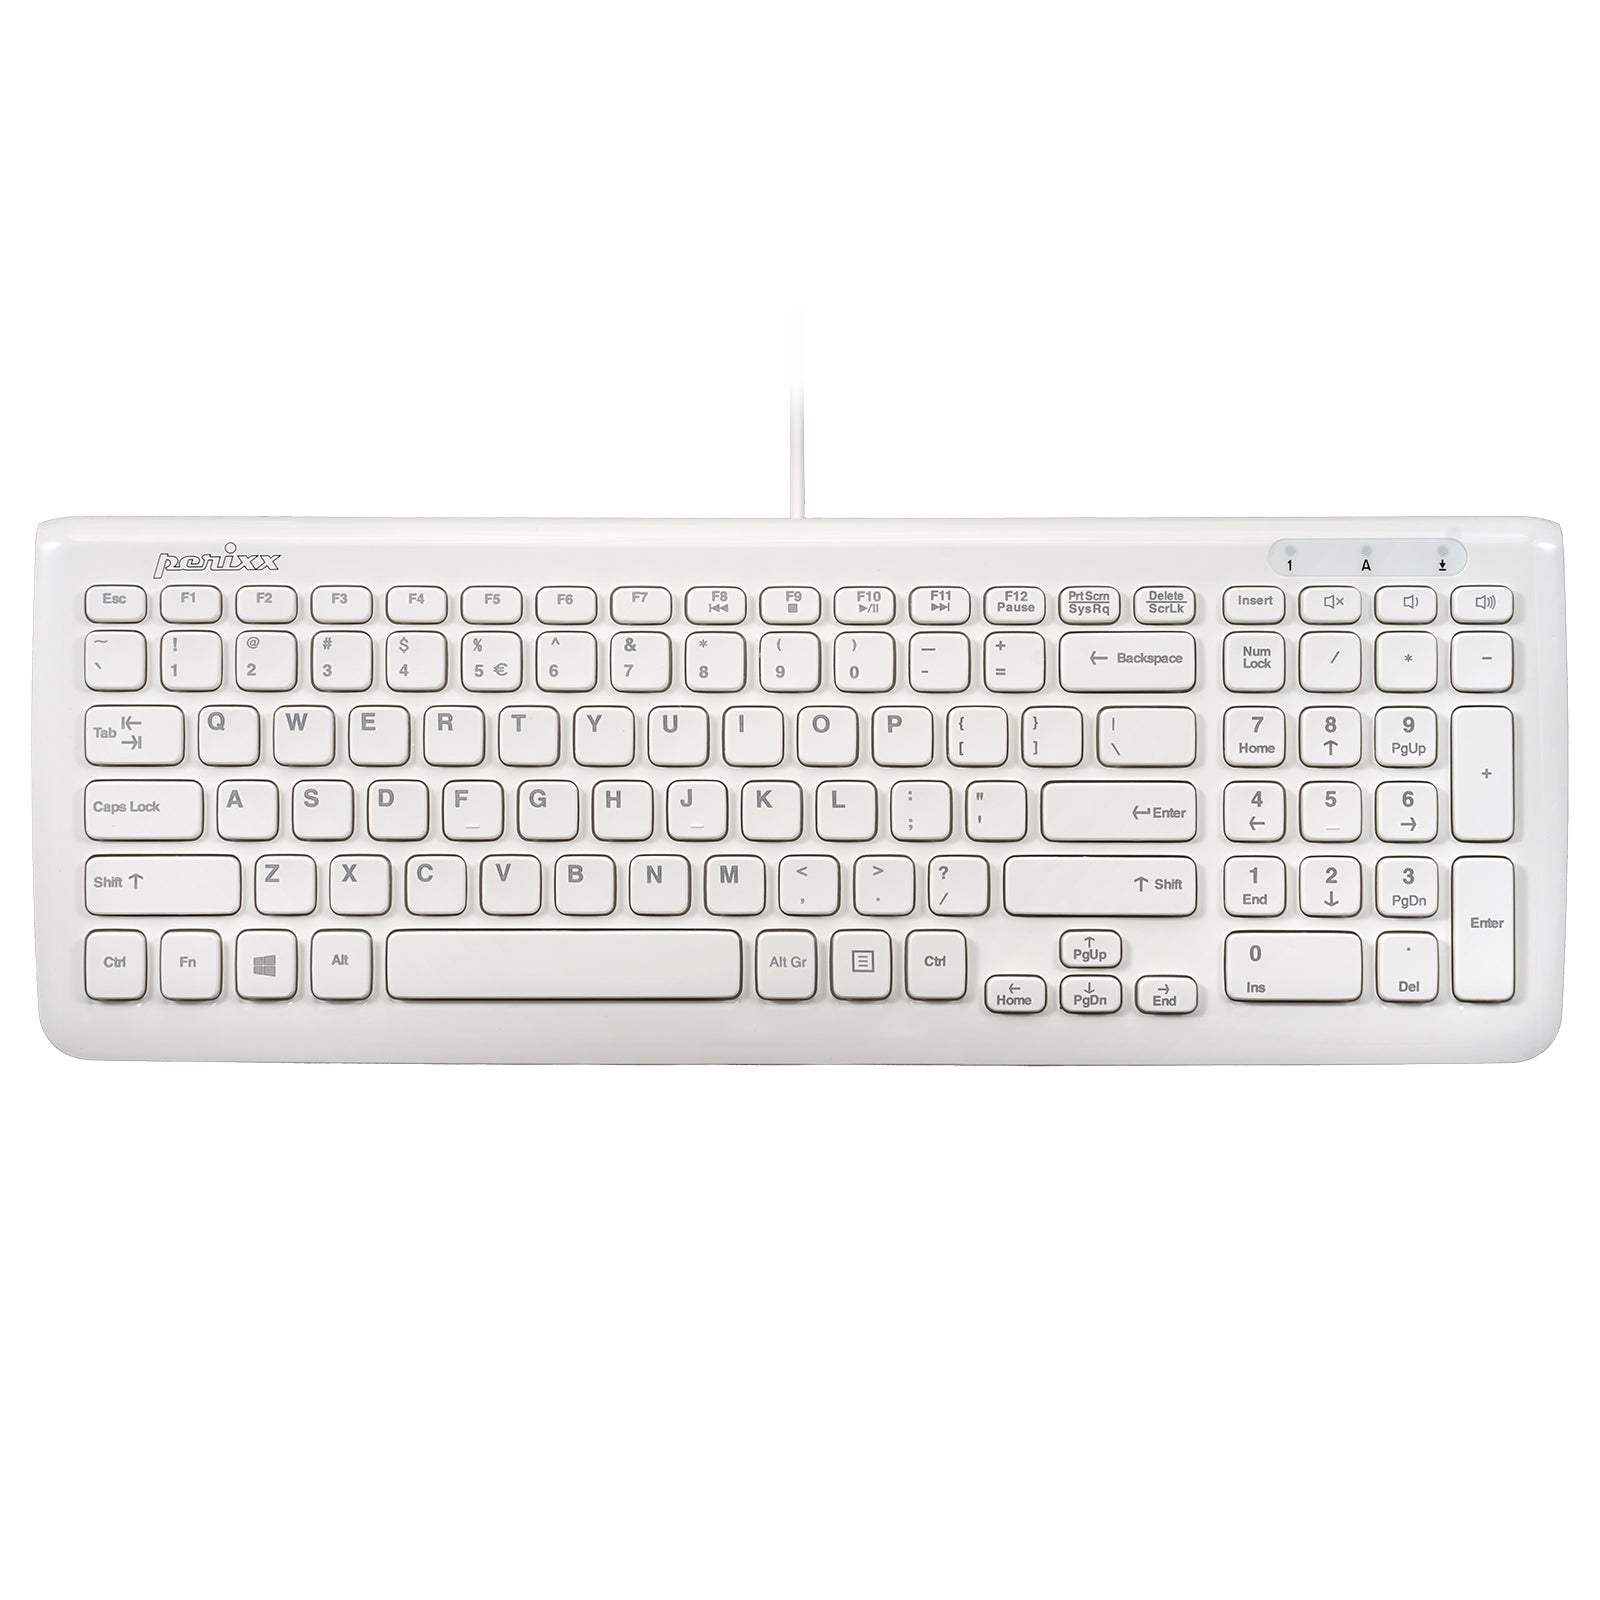 PERIBOARD-208 W - Wired Compact Keyboard - Perixx Europe